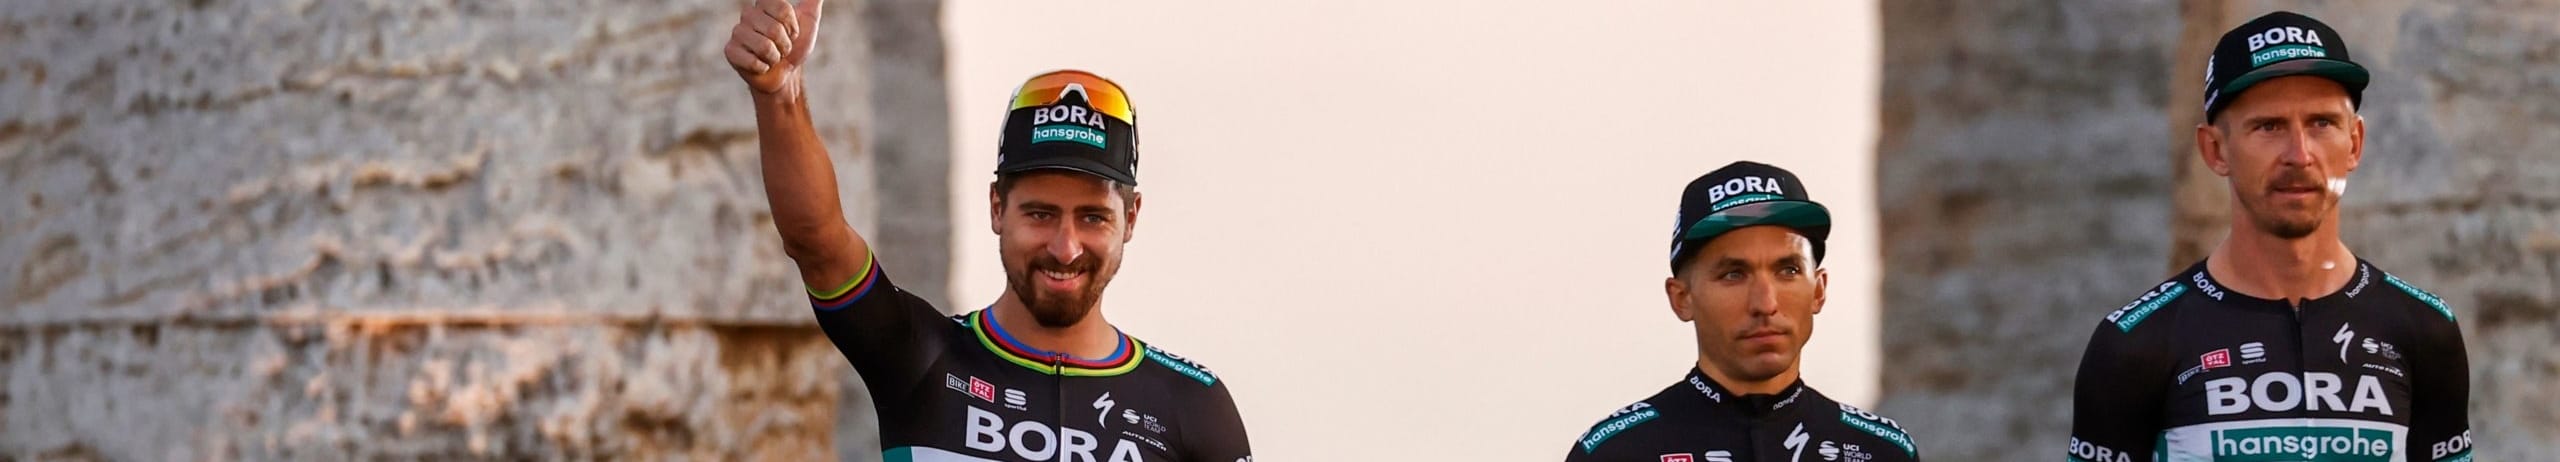 Giro d'Italia 2020, quote e favoriti per la tappa 2: il momento di Sagan?